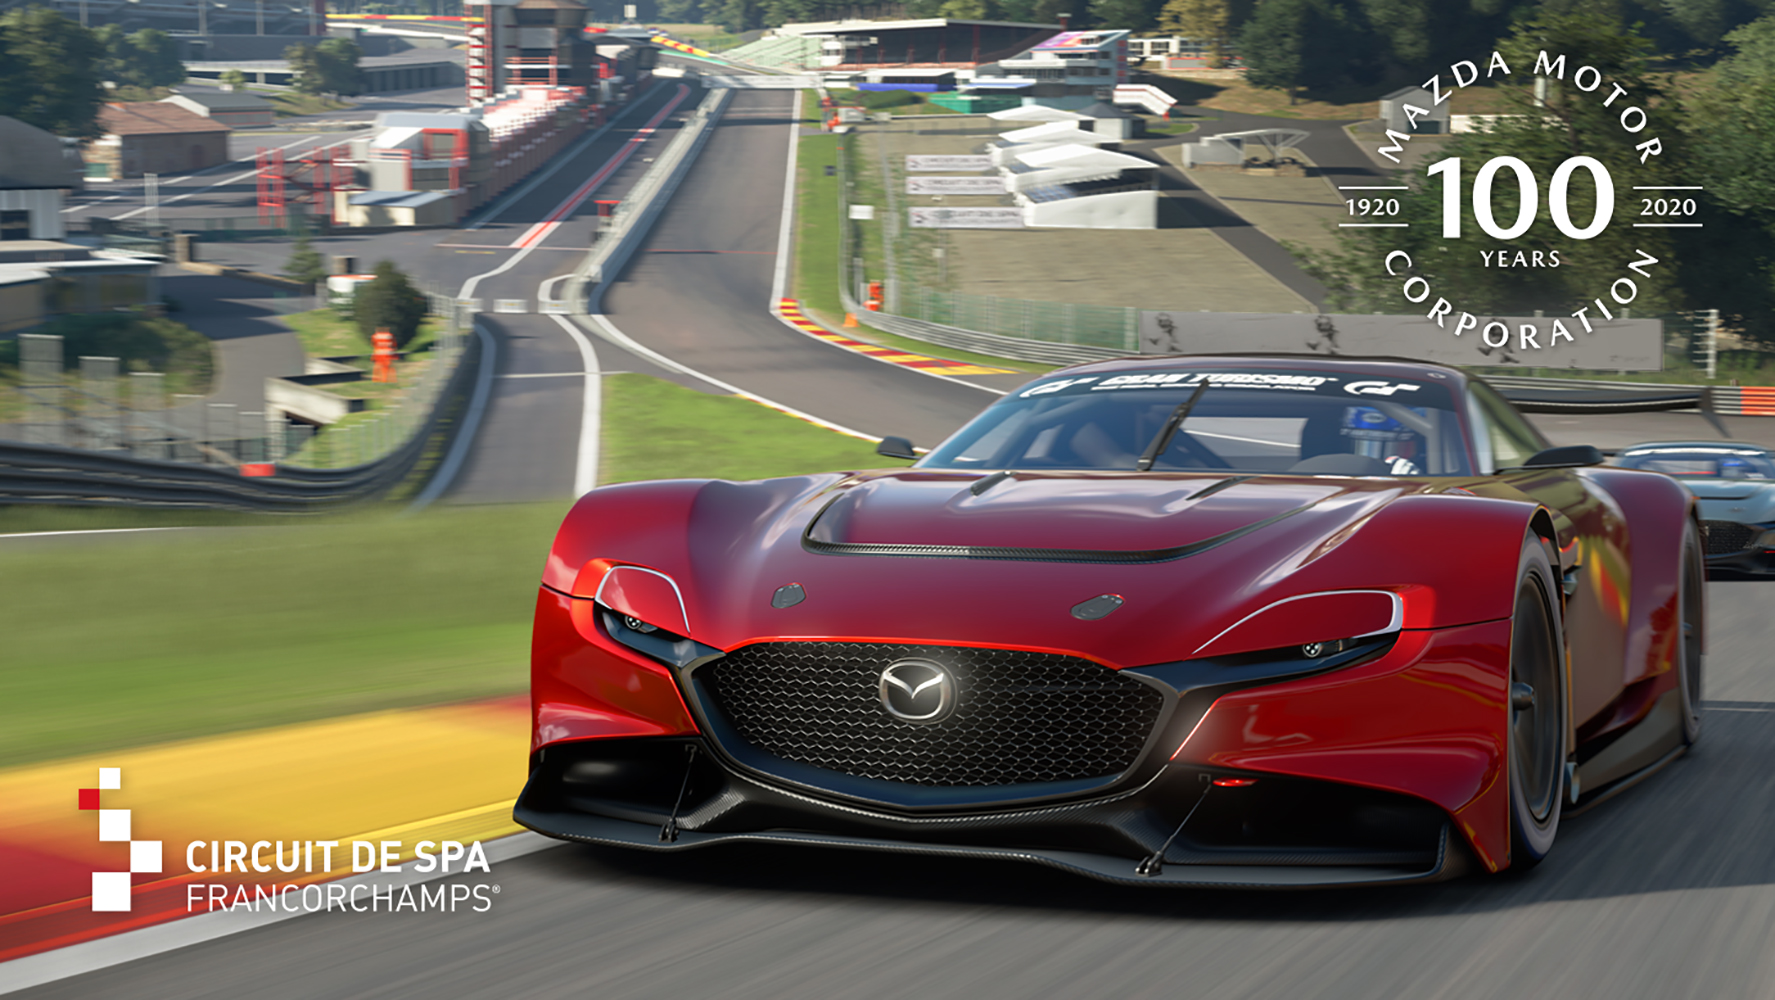 Gran Turismo 7 chega em edição comemorativa ao PlayStation - Games - Campo  Grande News